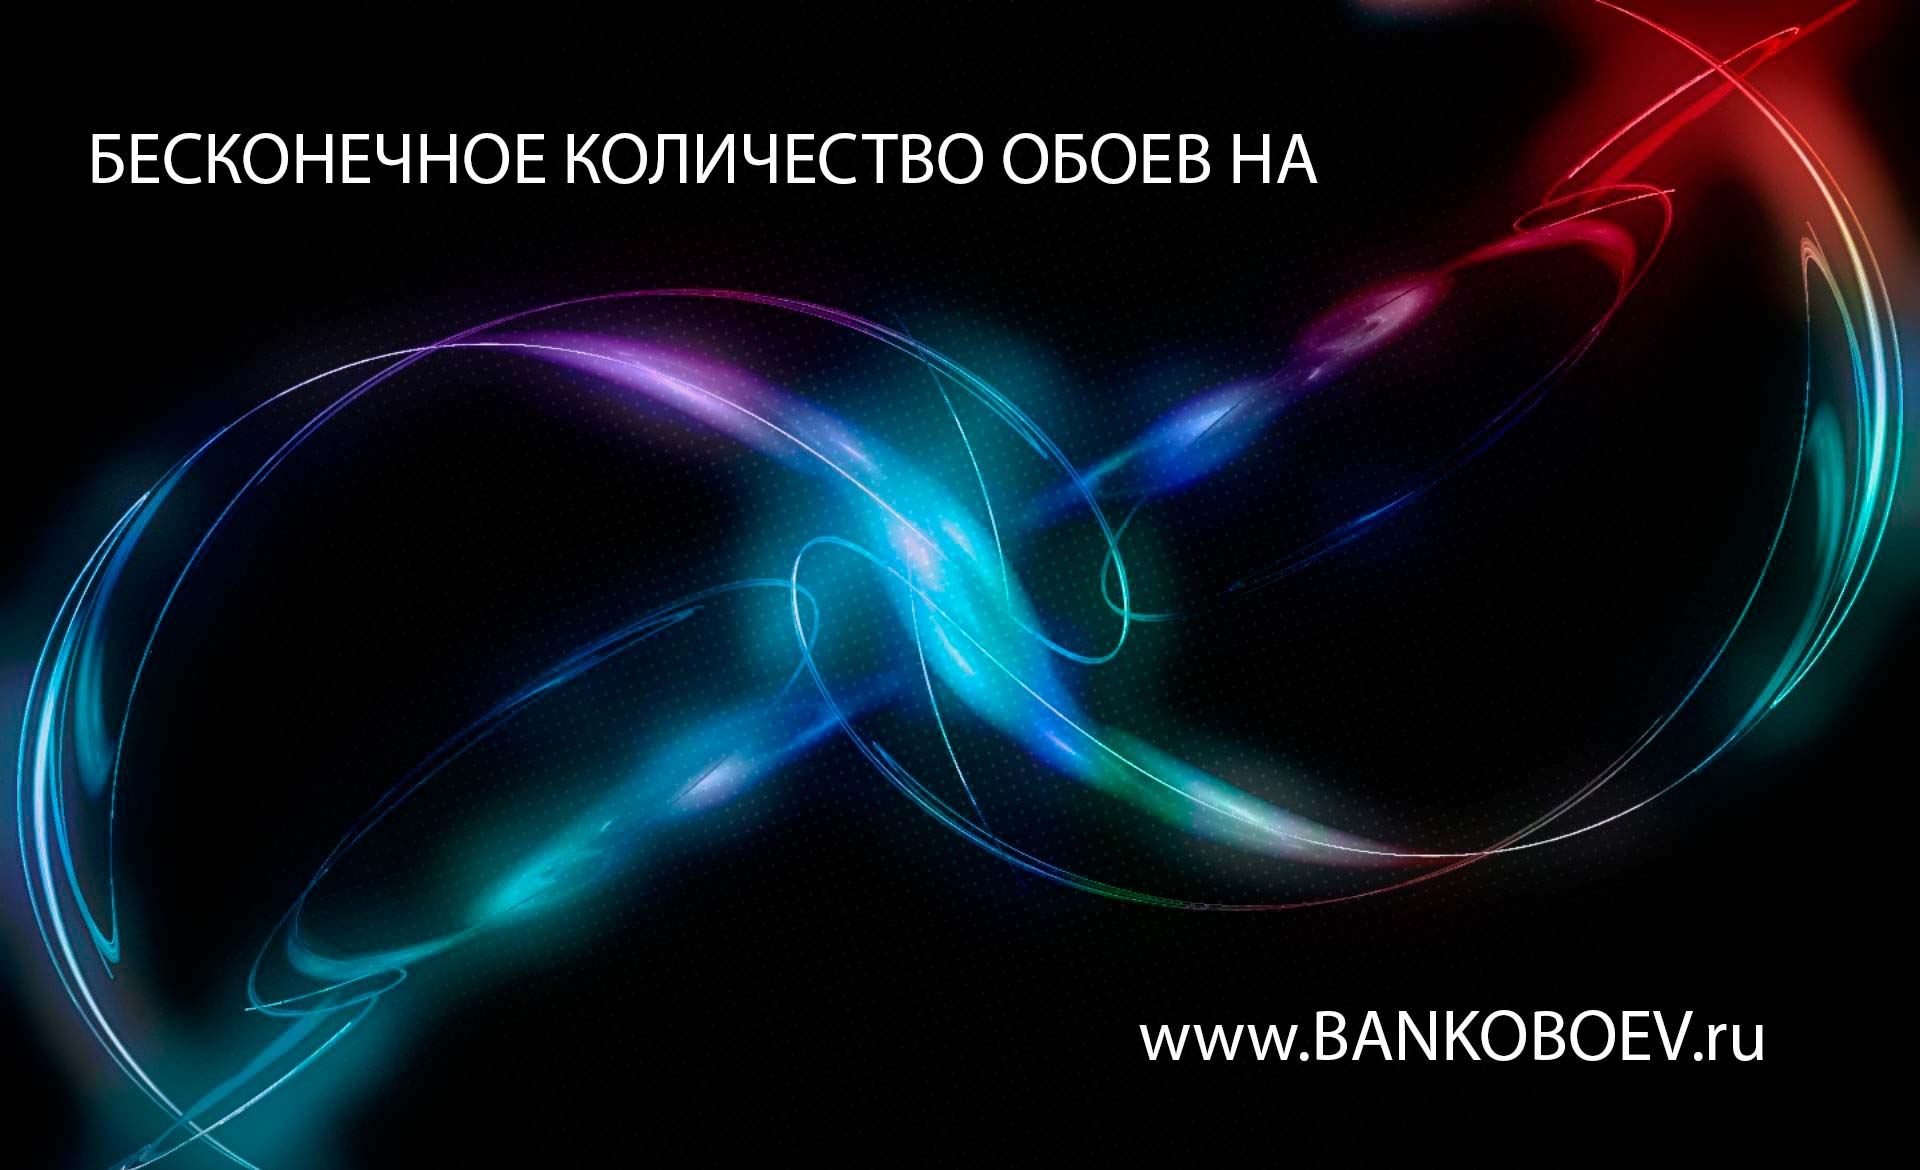 Bankoboev Ru Image Mtu2mdm Jpg